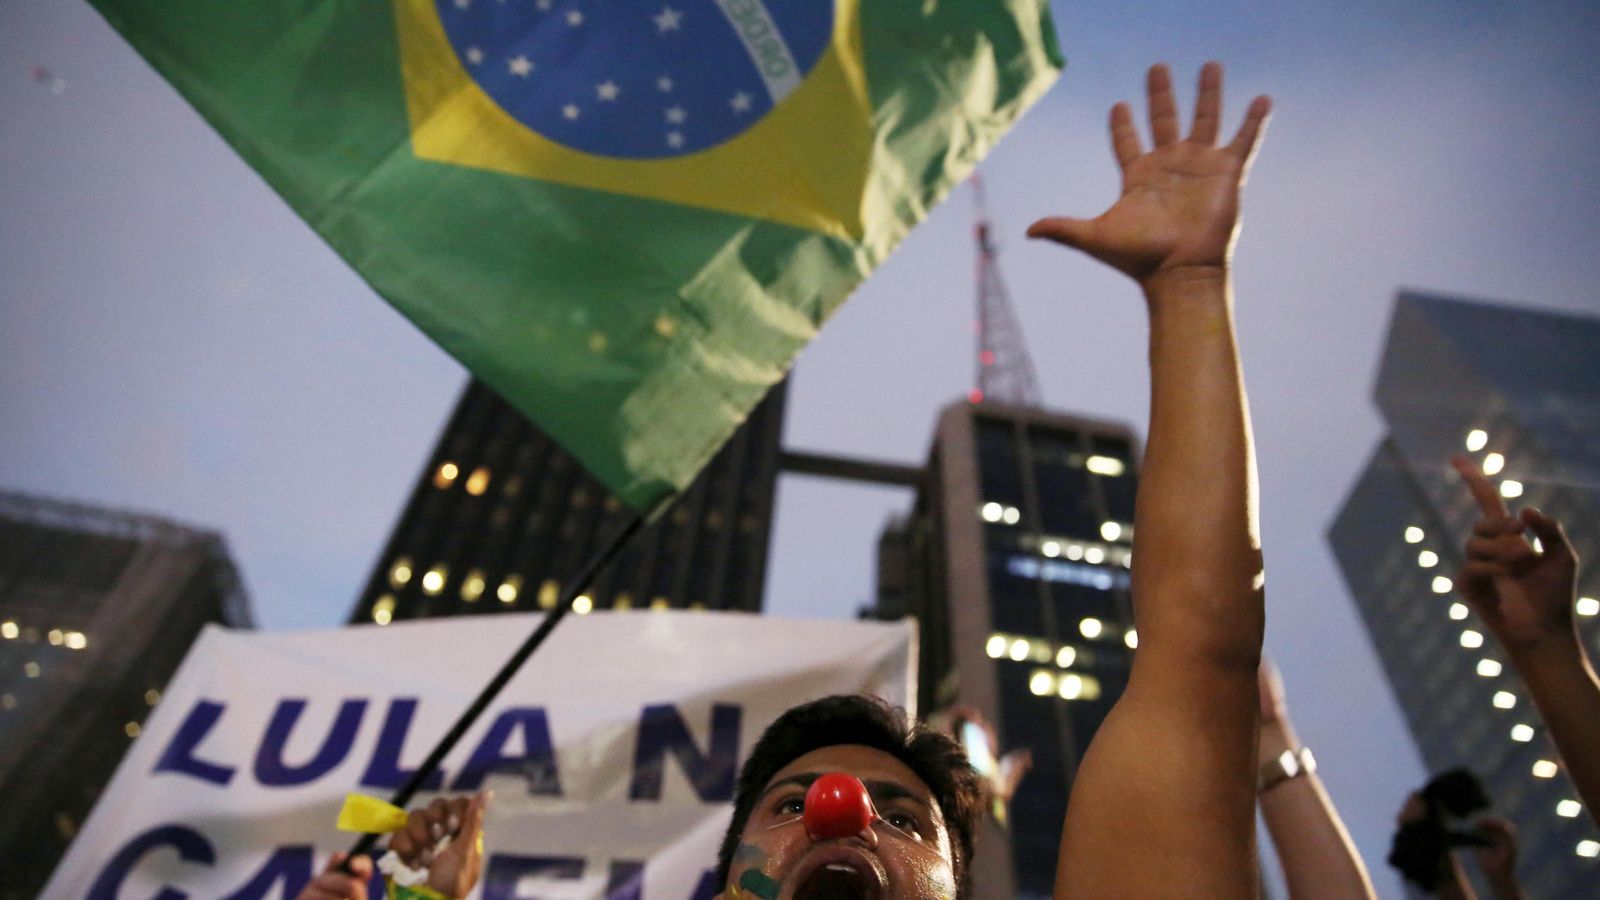 Foto: Un manifestante durante una protesta contra Rousseff y Lula en Sao Paulo, el 17 de marzo de 2016 (Reuters)